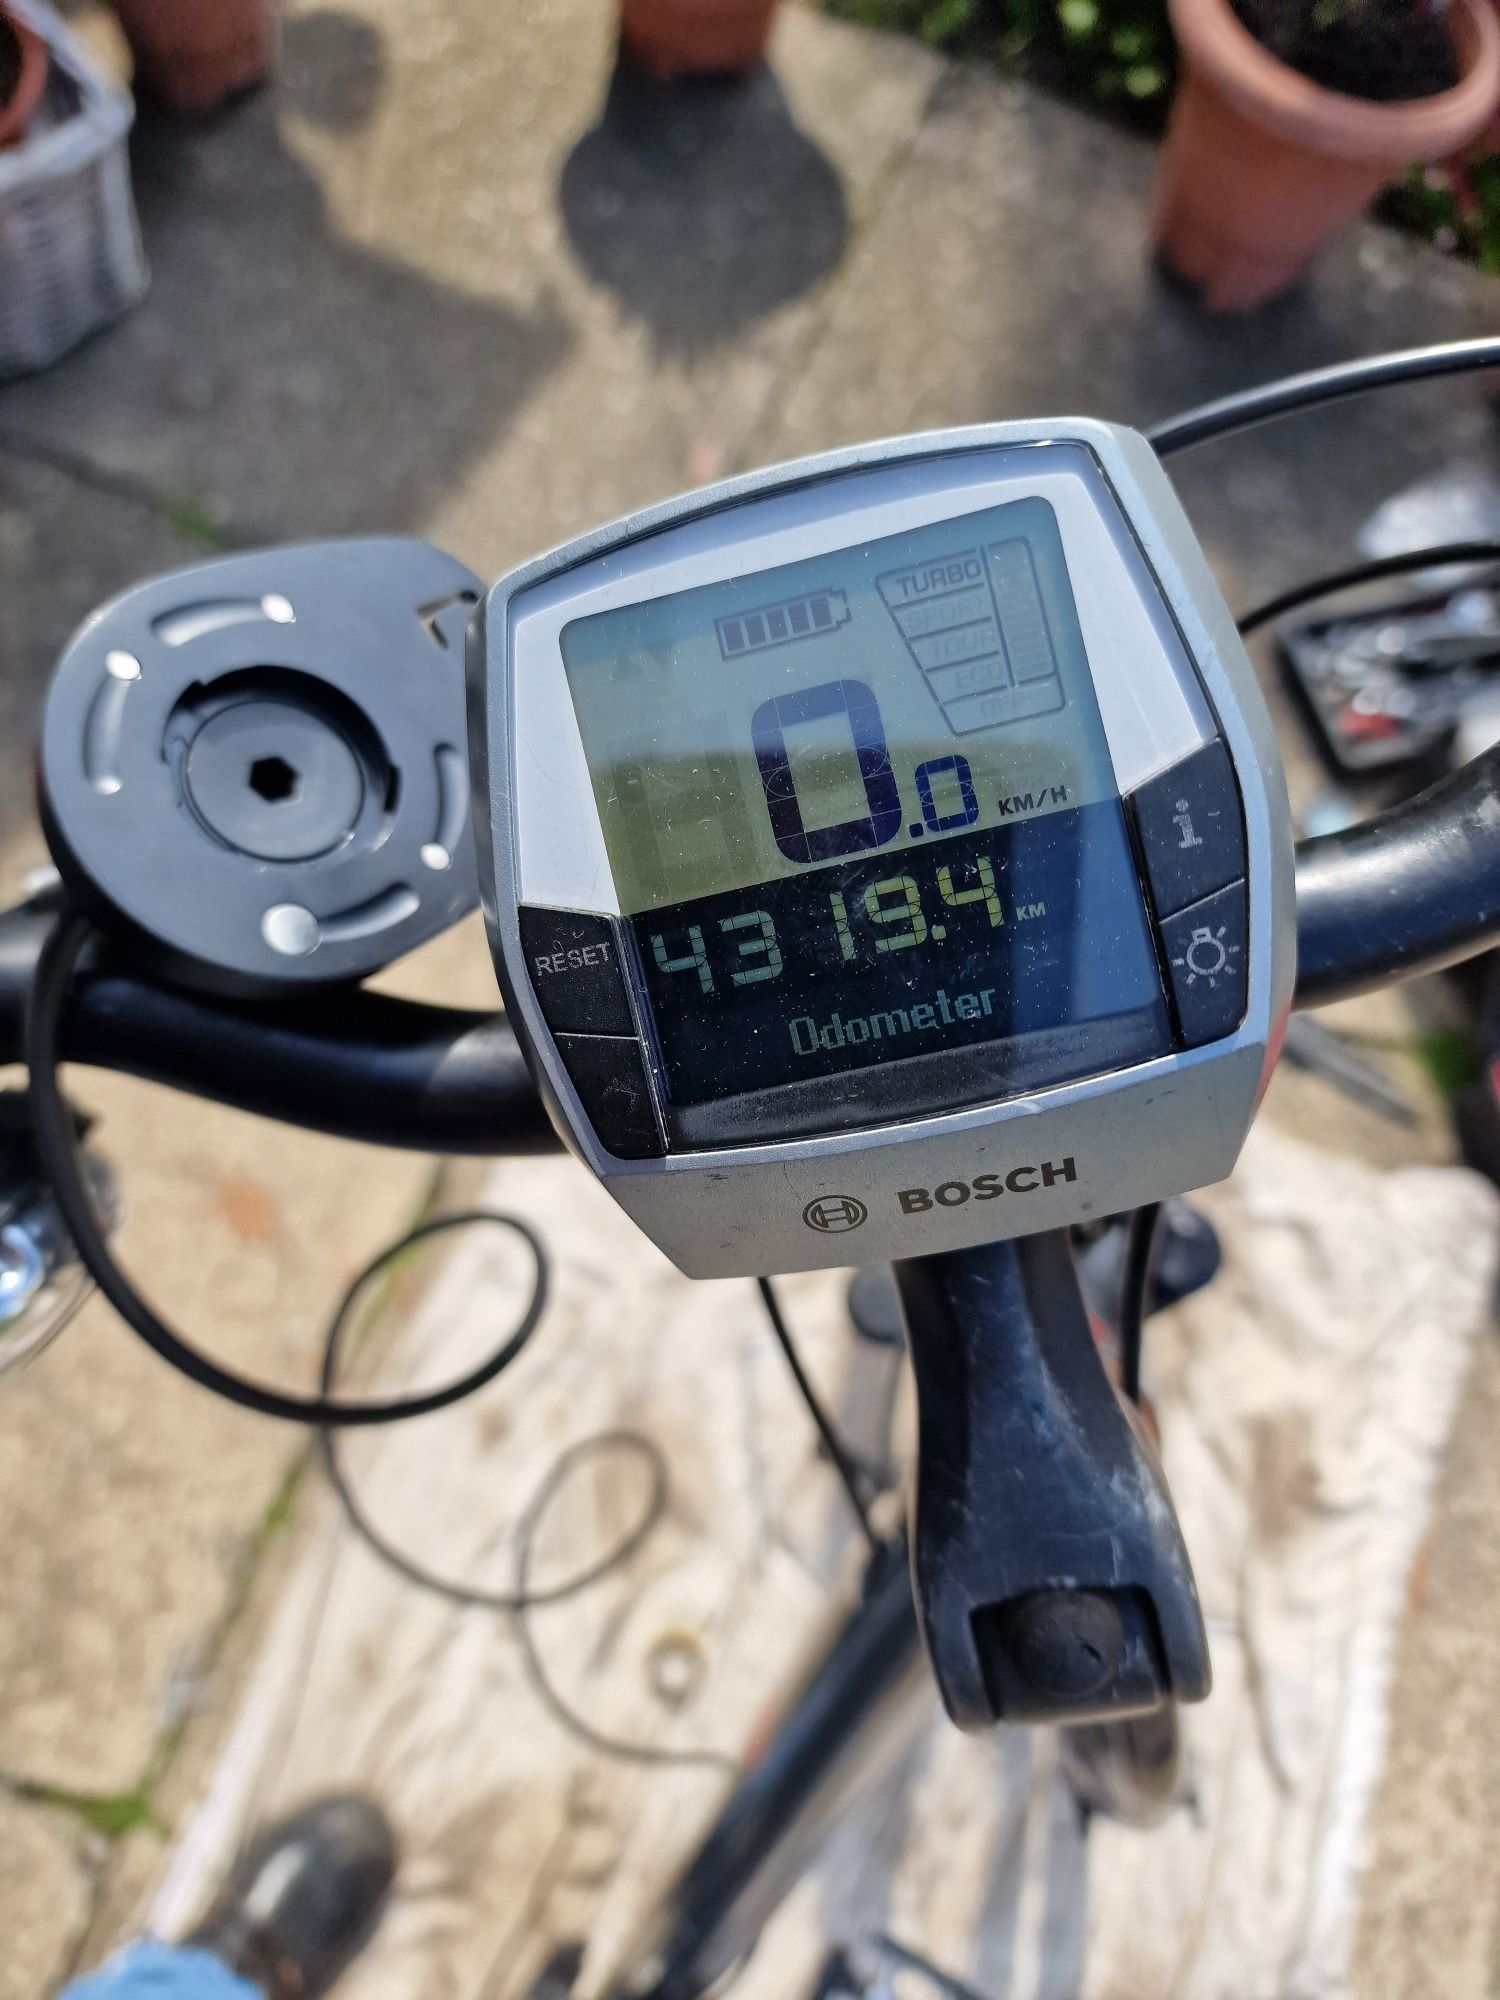 Silnik Bosch Classic 25kmh przebieg 4319 km , po serwisie